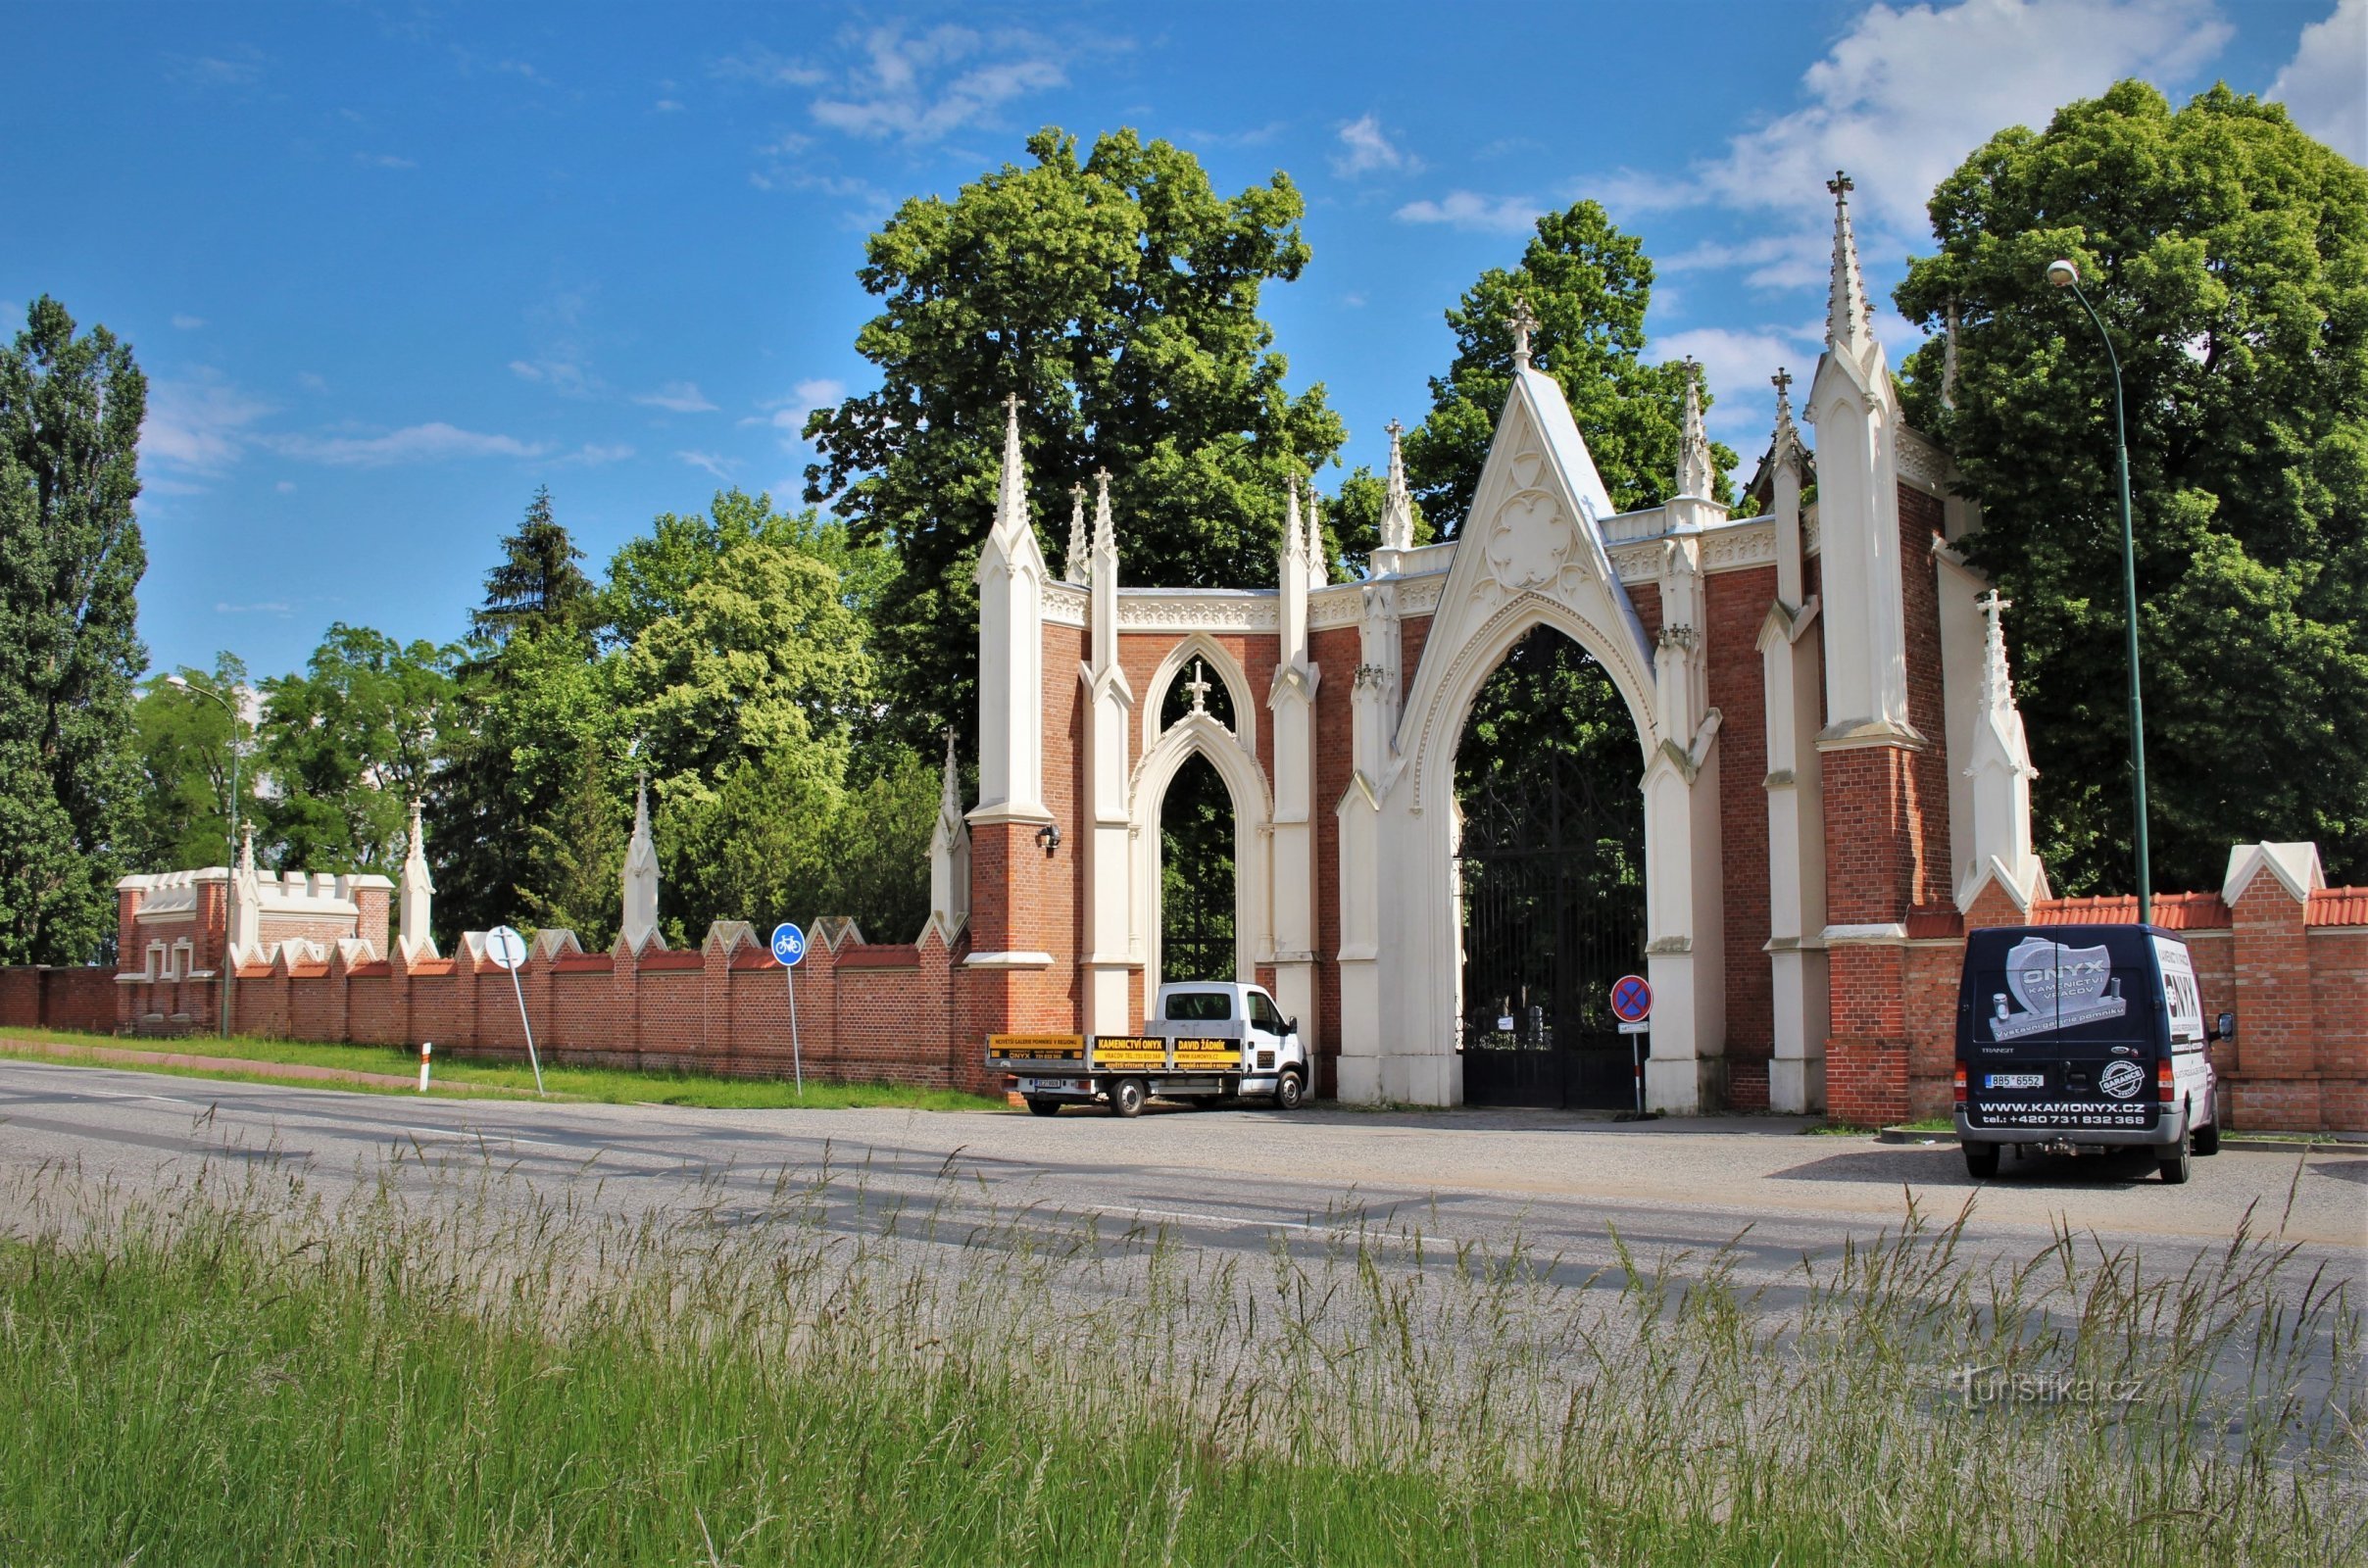 Poarta de intrare in cimitir cu zid